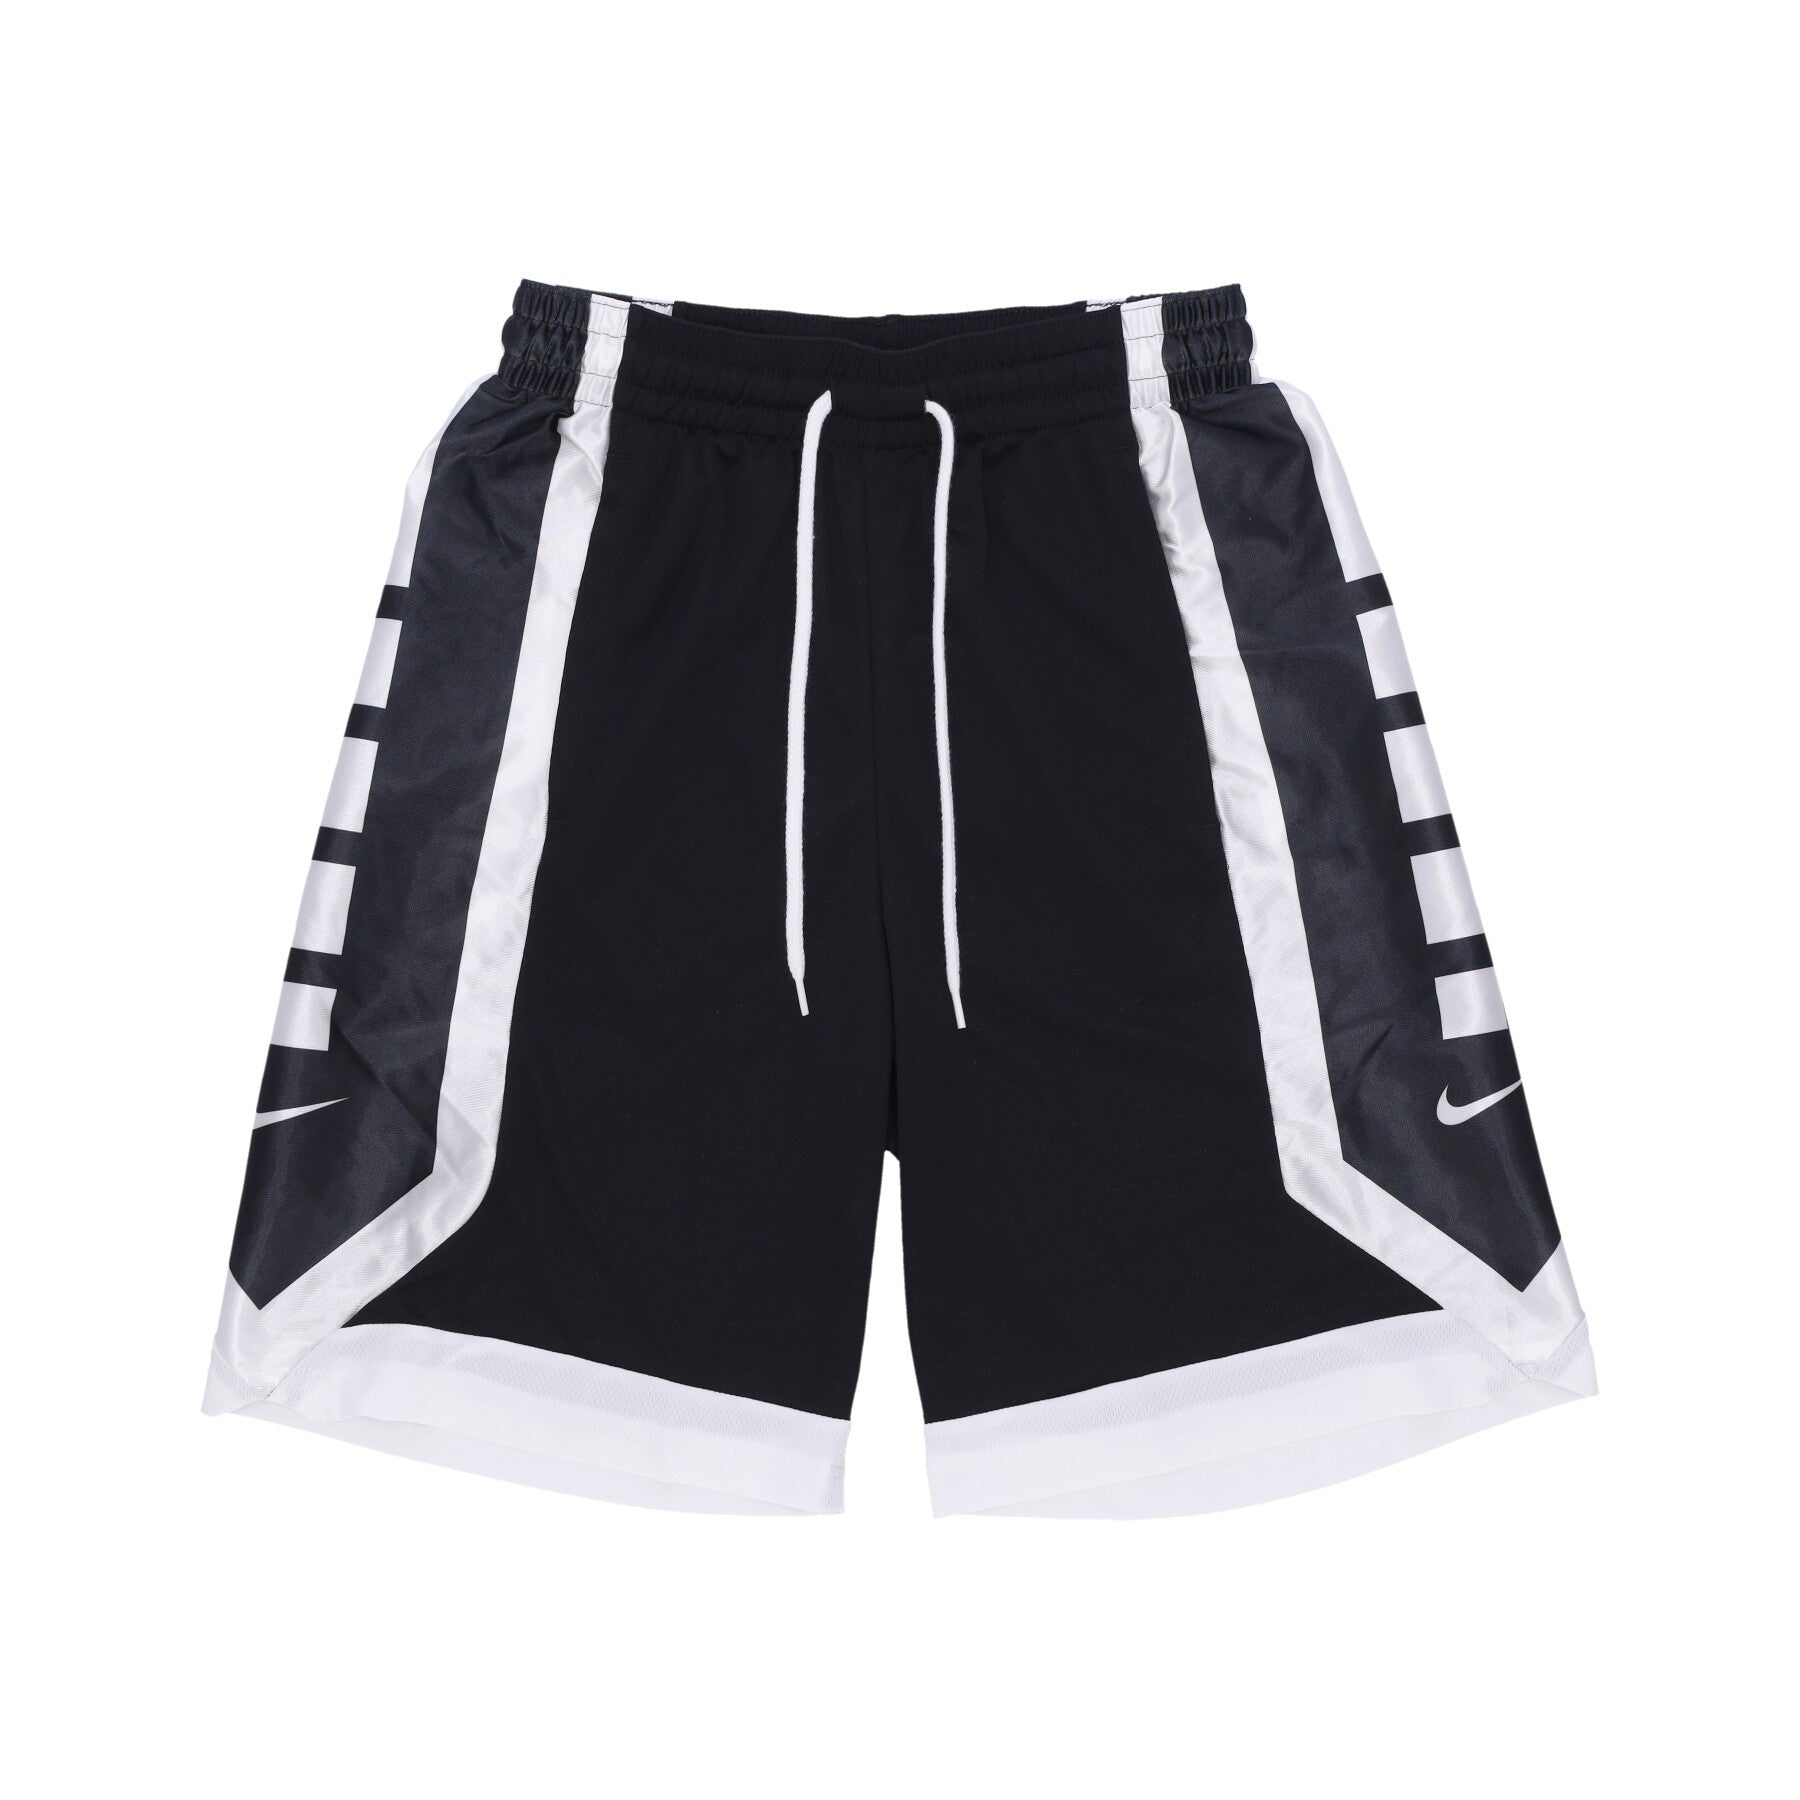 Men's Basketball Shorts Dri-fit Elite Basketball Shorts Black/white/white